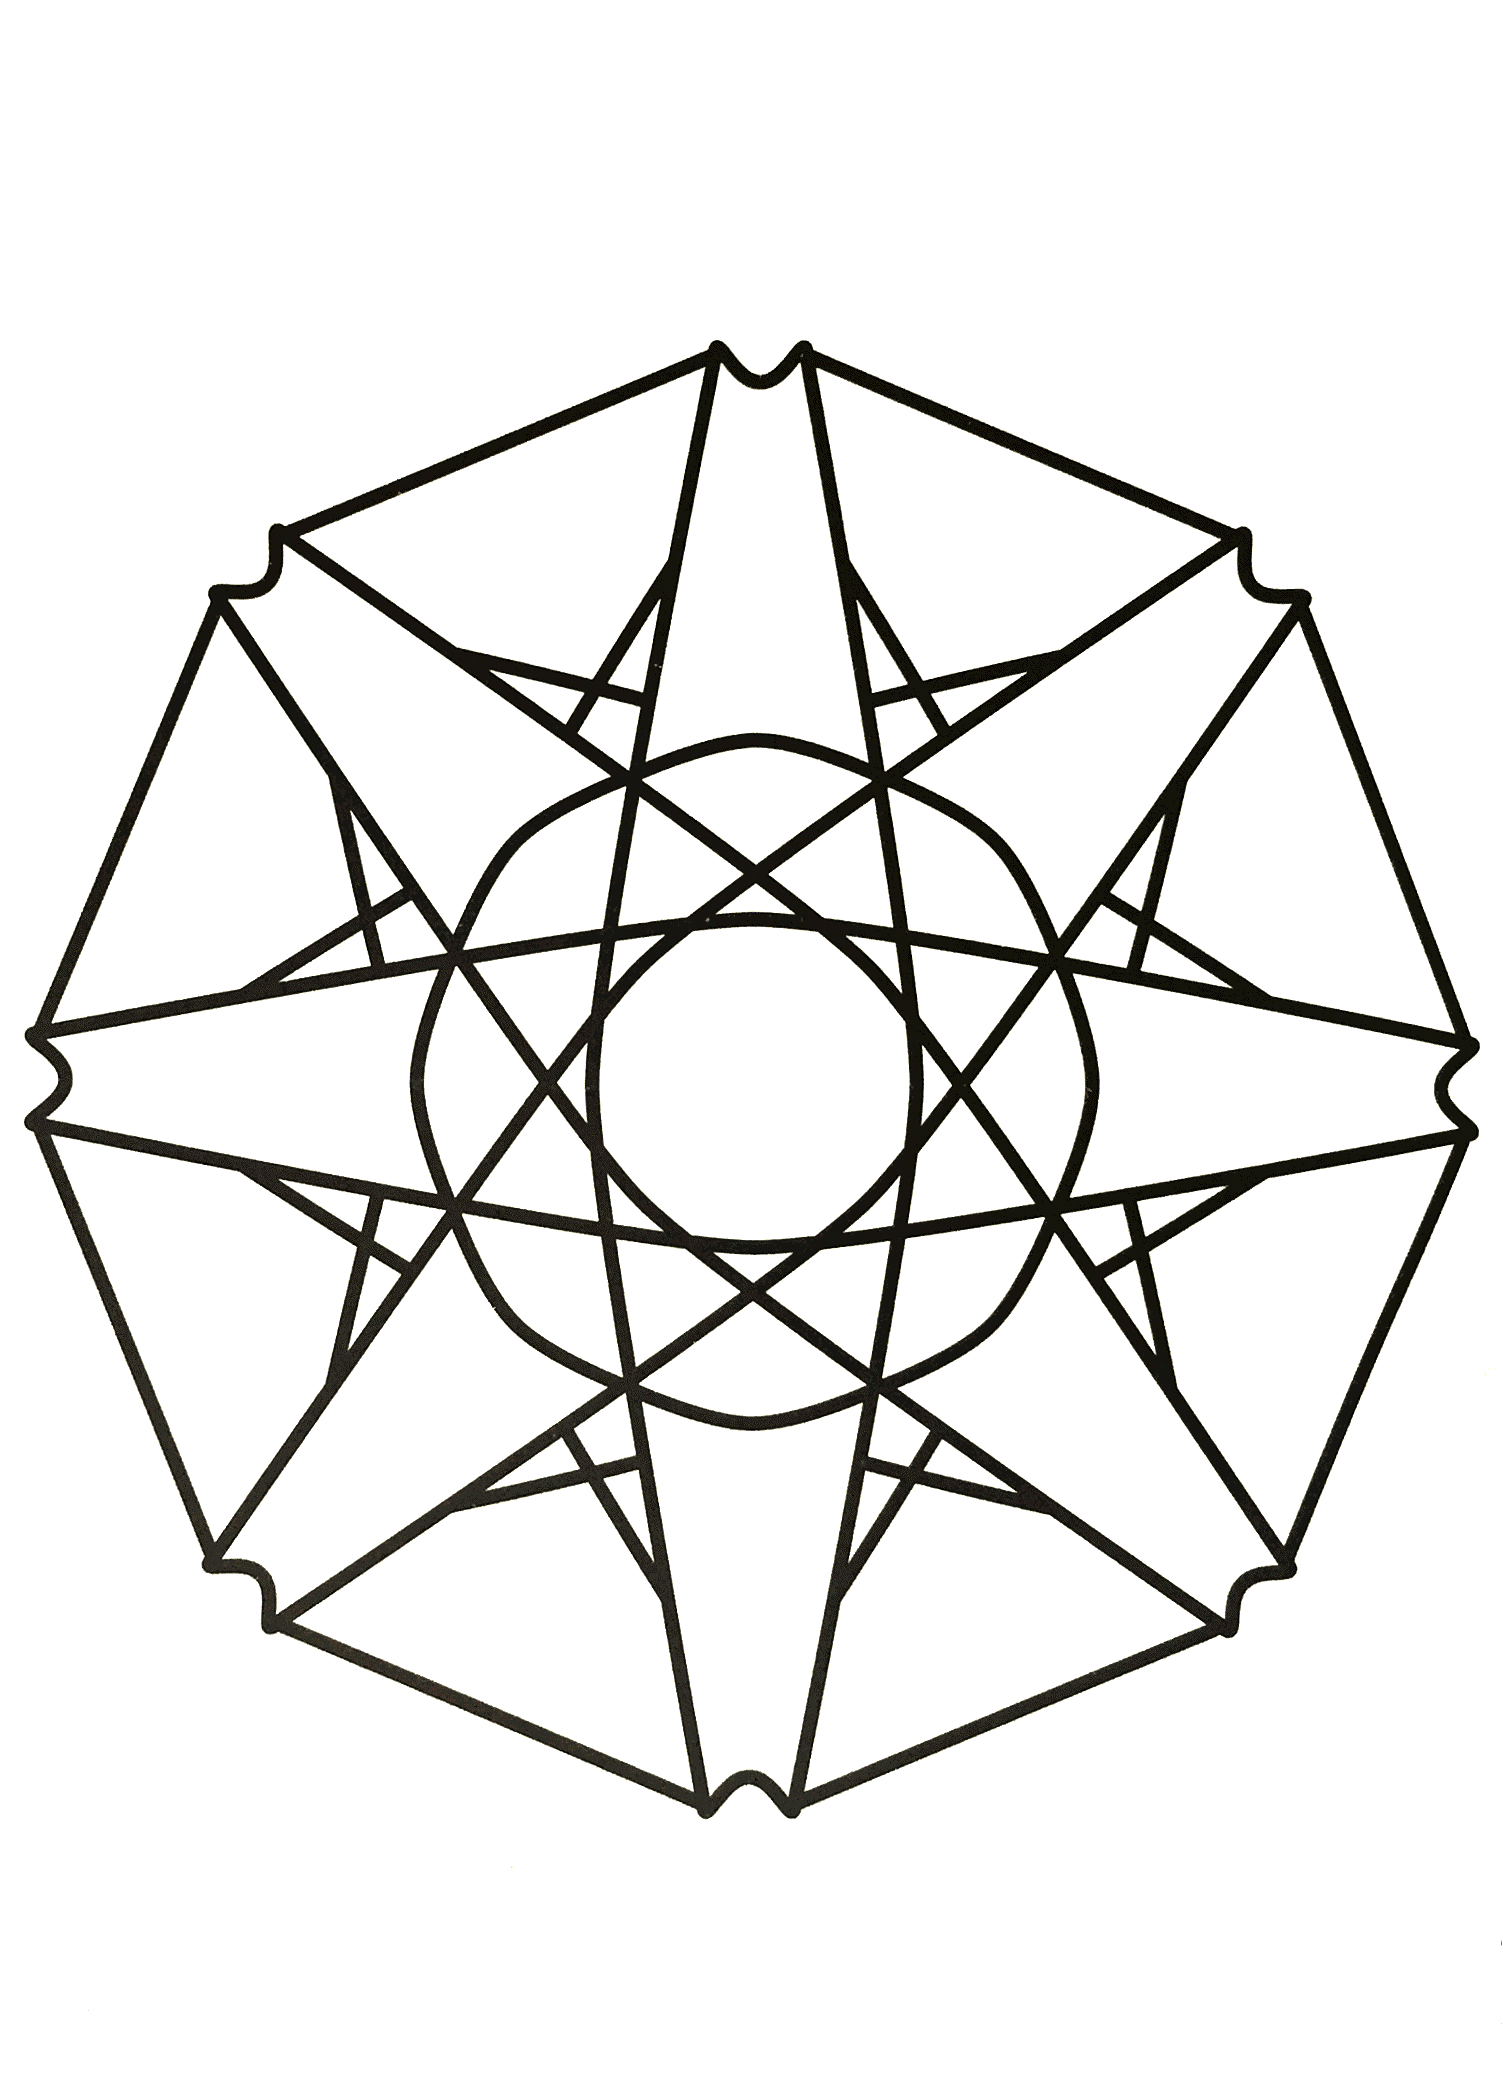 Magnifique mandala symétriques avec plusieurs triangles ainsi qu'une superbe étoile au centre du dessin. Assez simple à colorier.